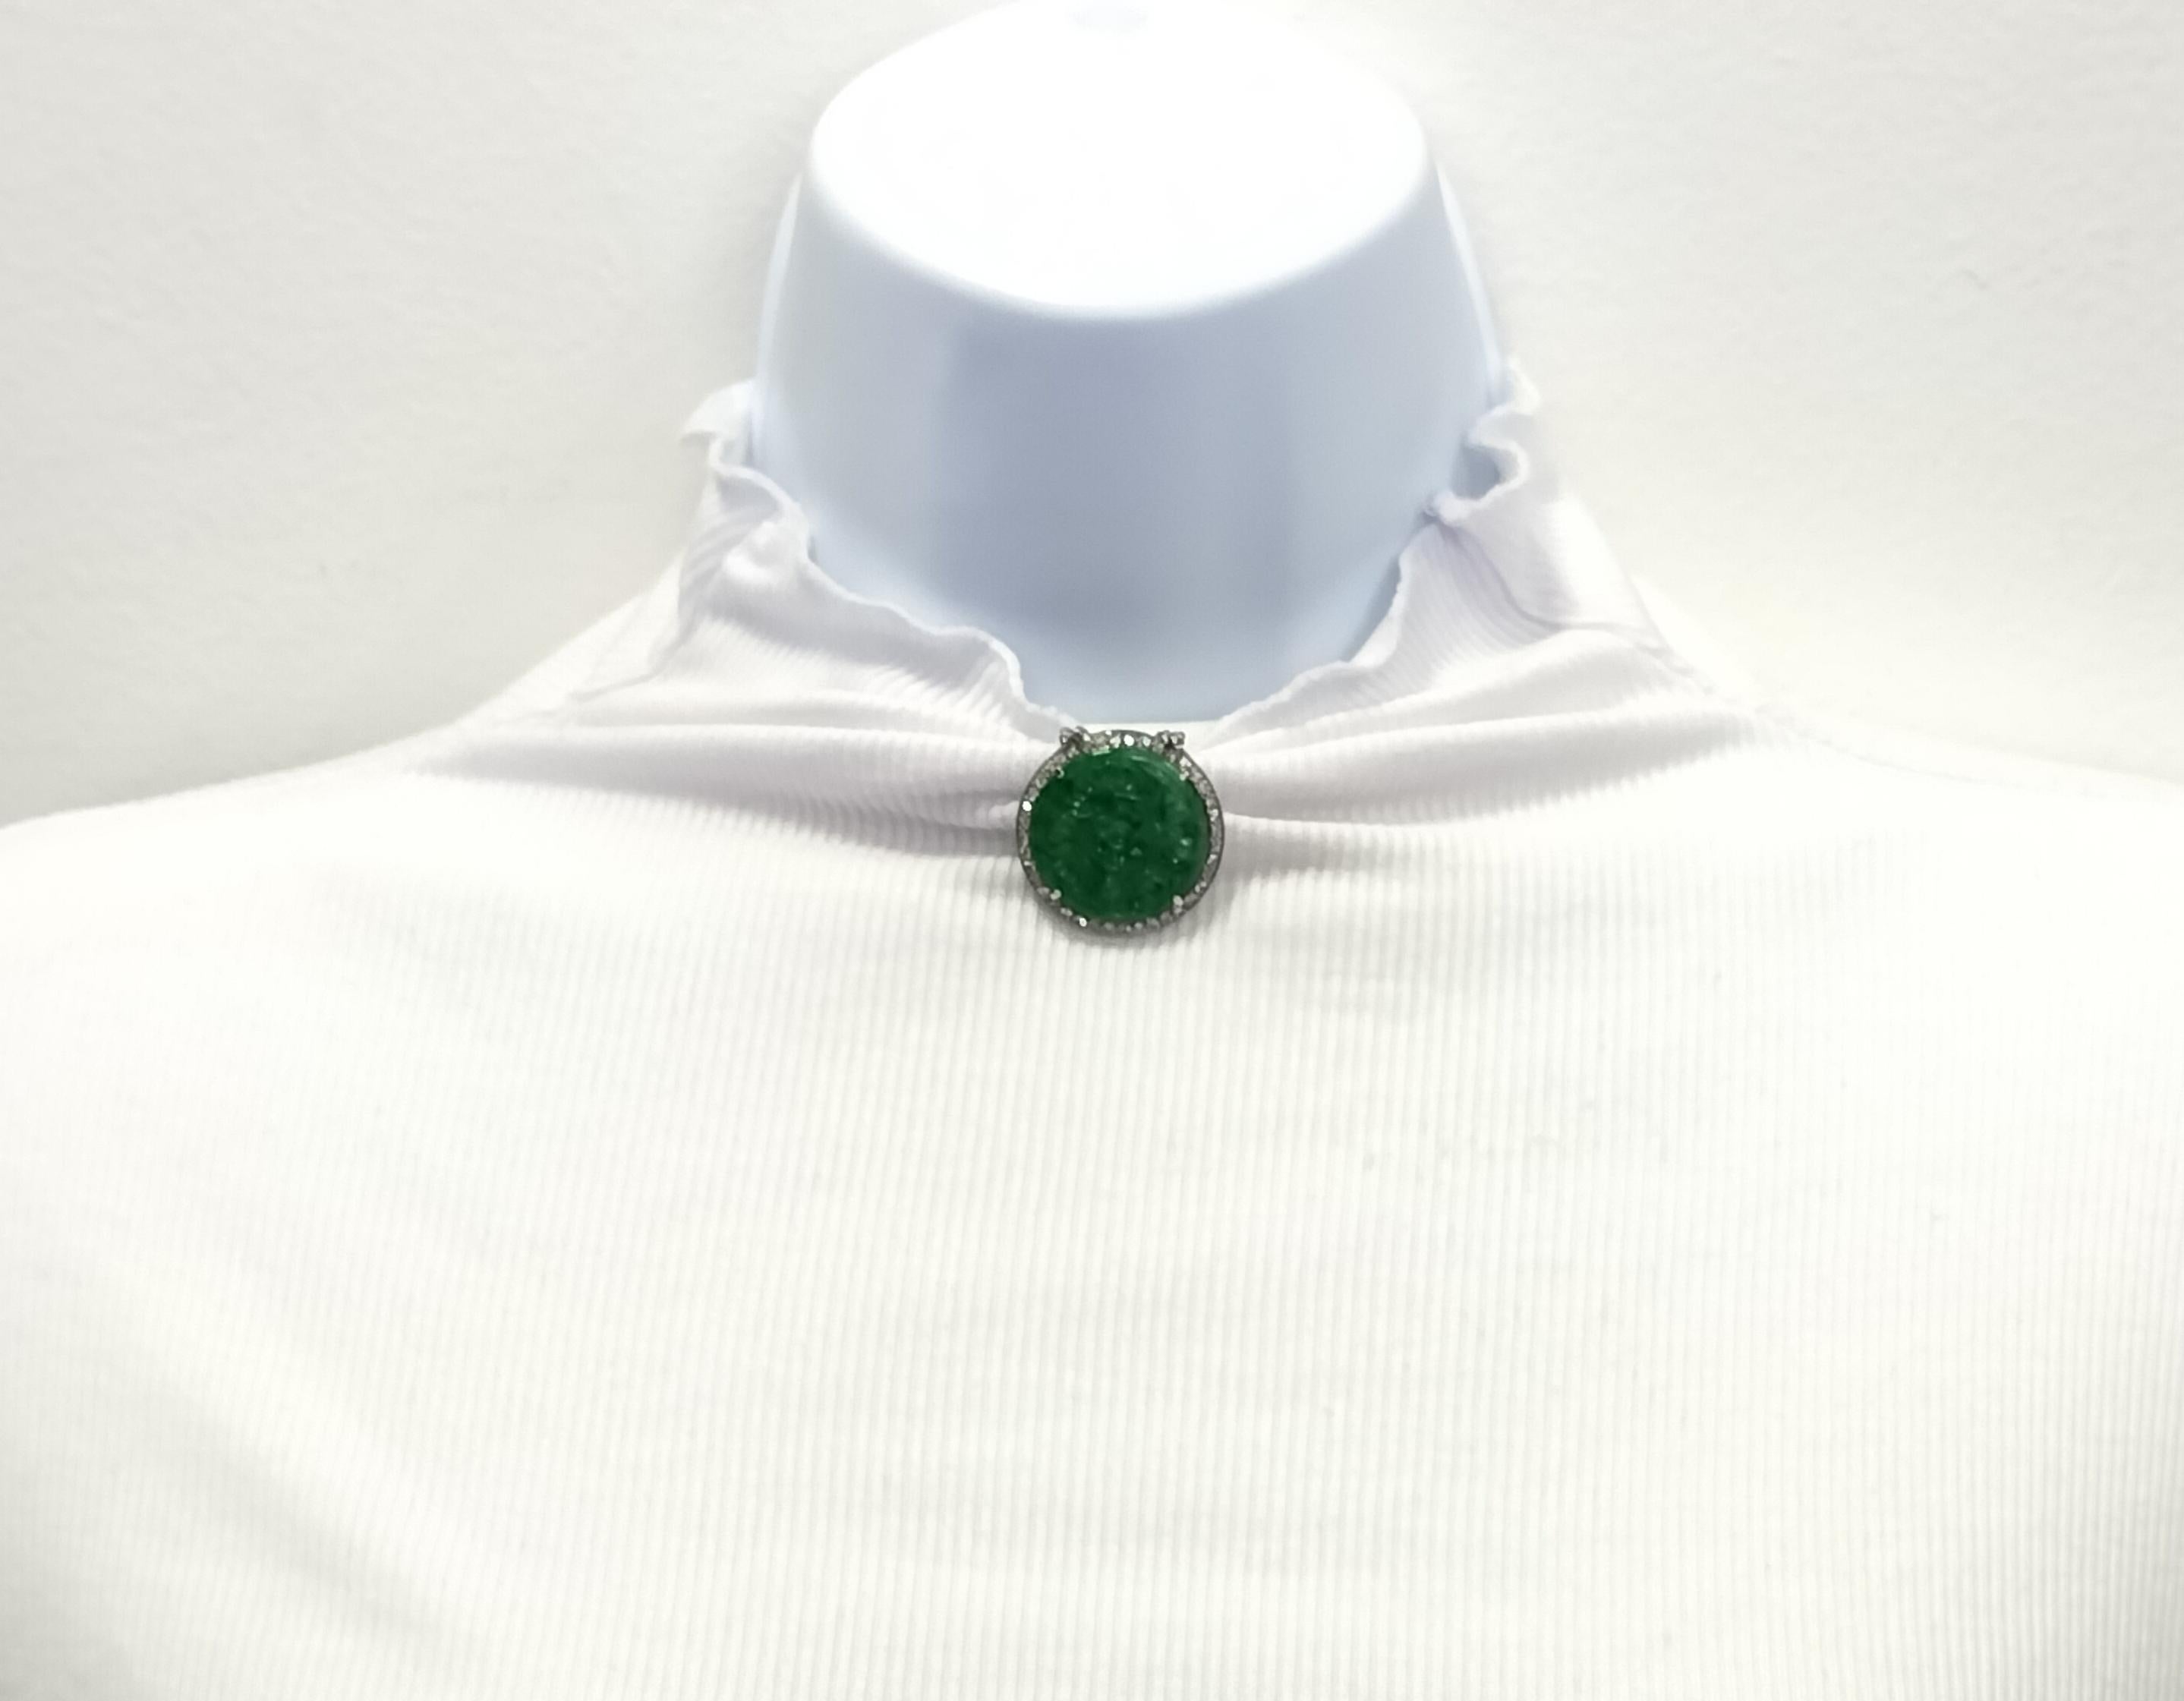 Schöne große runde geschnitzte grüne Jade mit 0,10 ct. weißen Diamanten Runden.  Handgefertigt in Platin.  Diese Brosche ist ein Glückssymbol und die Jade hat ein schönes helles Grün.